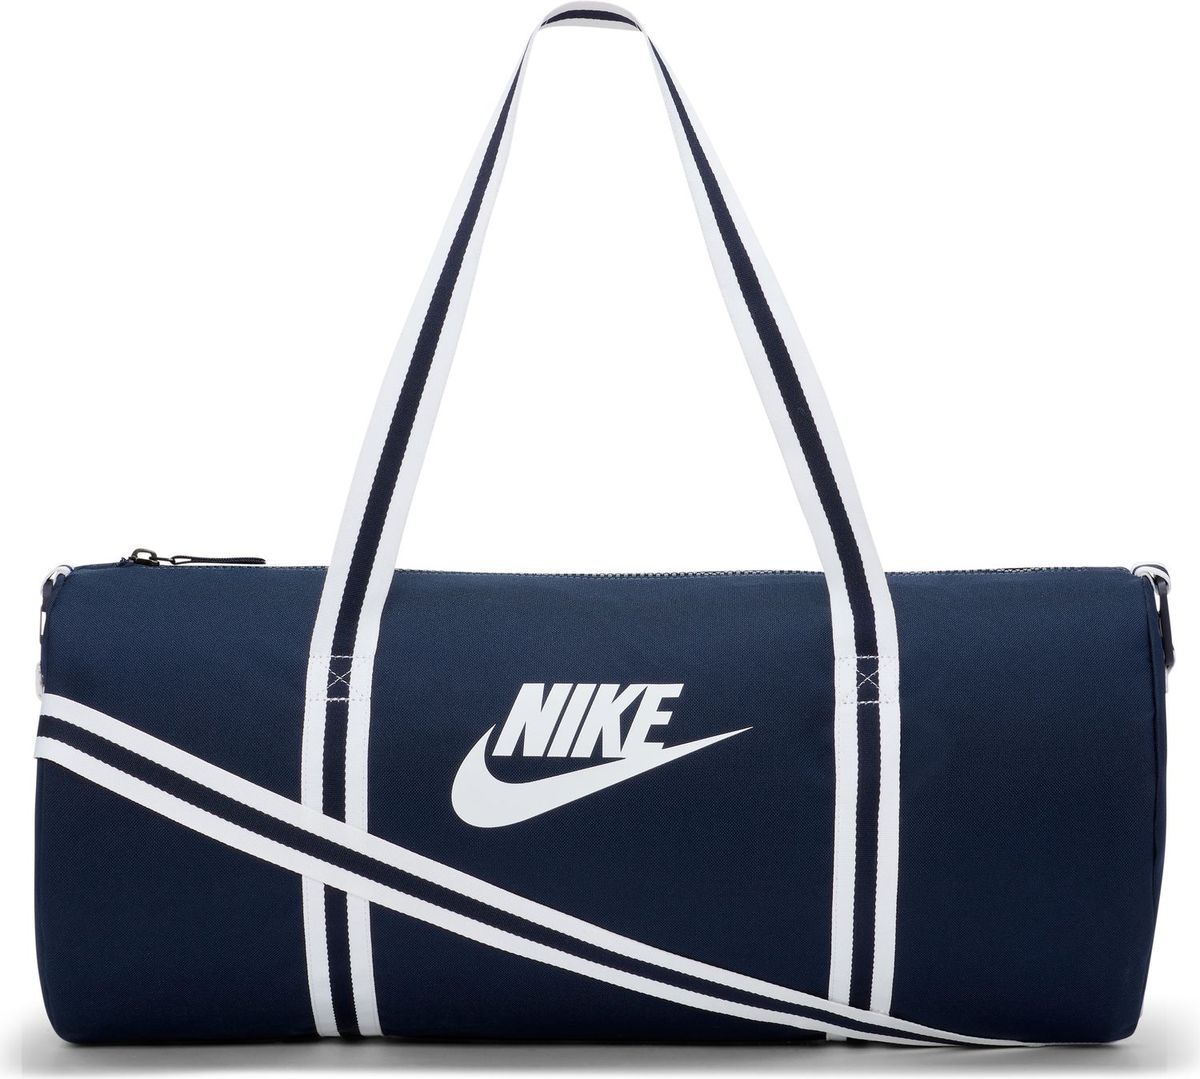 Nike Heritage Unisex Daybag